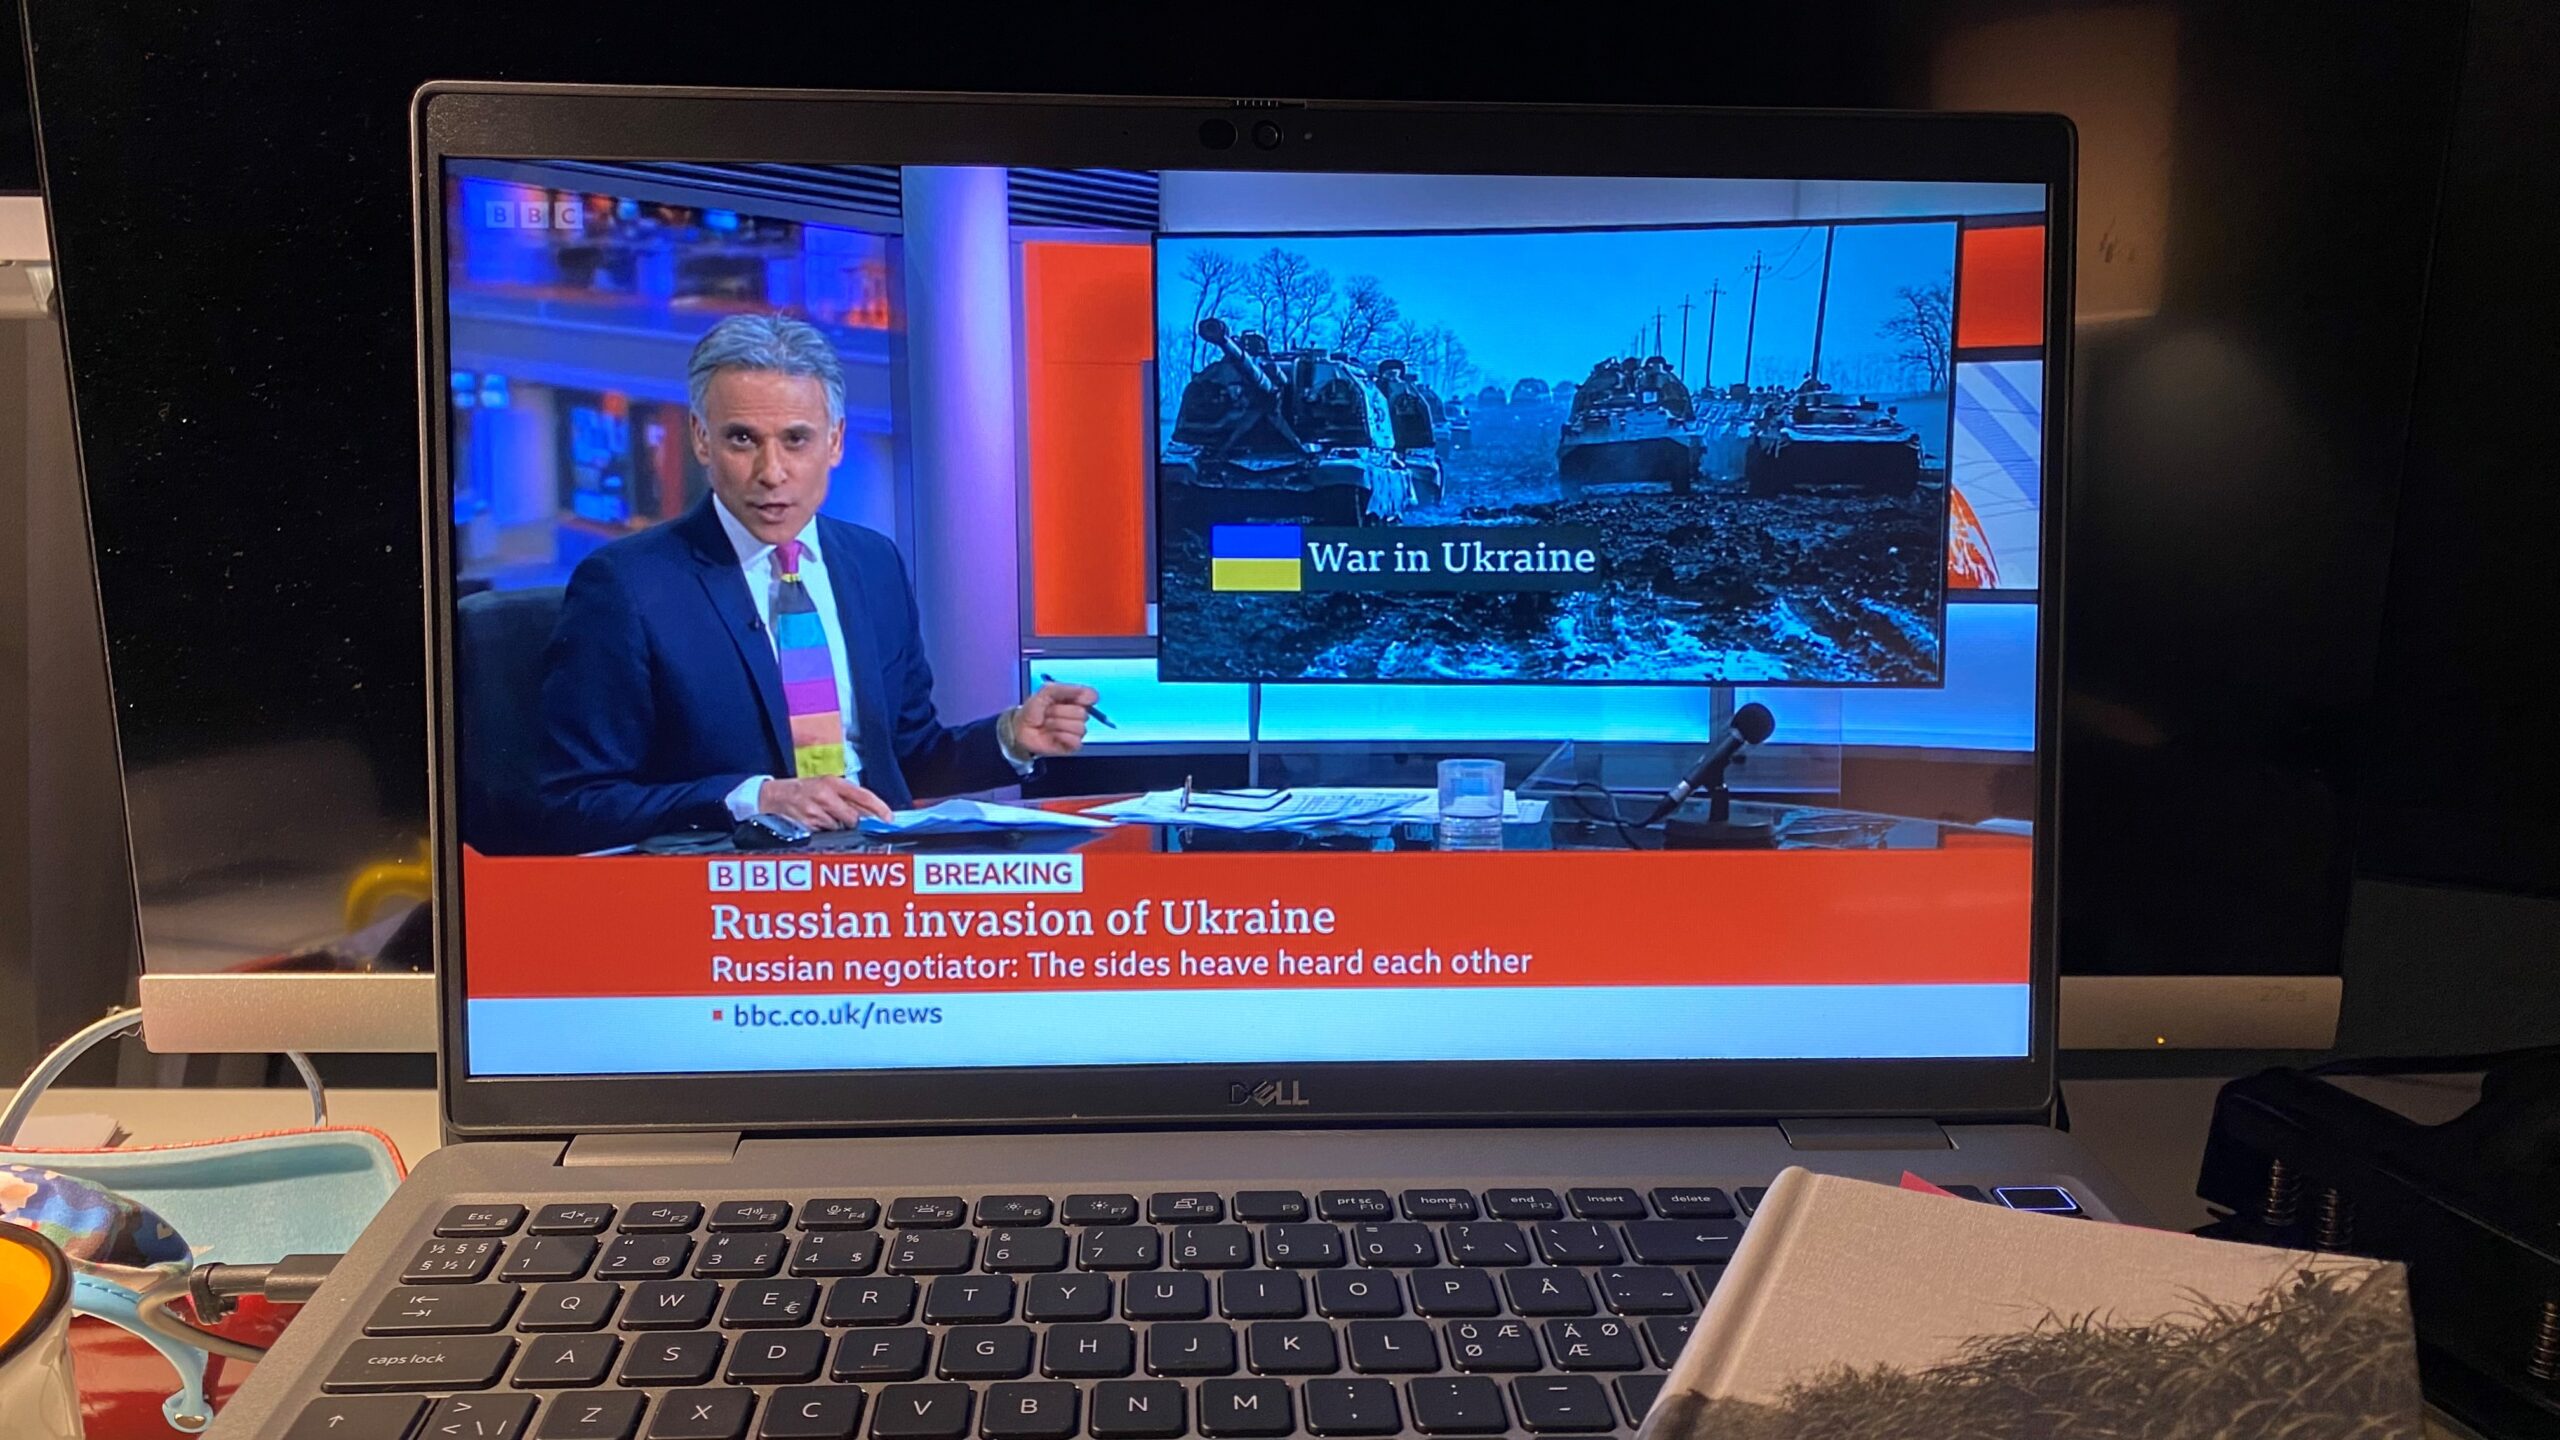 Källkritik. TV som visar bilder på nyhetssändningar om kriget i Ukraina.